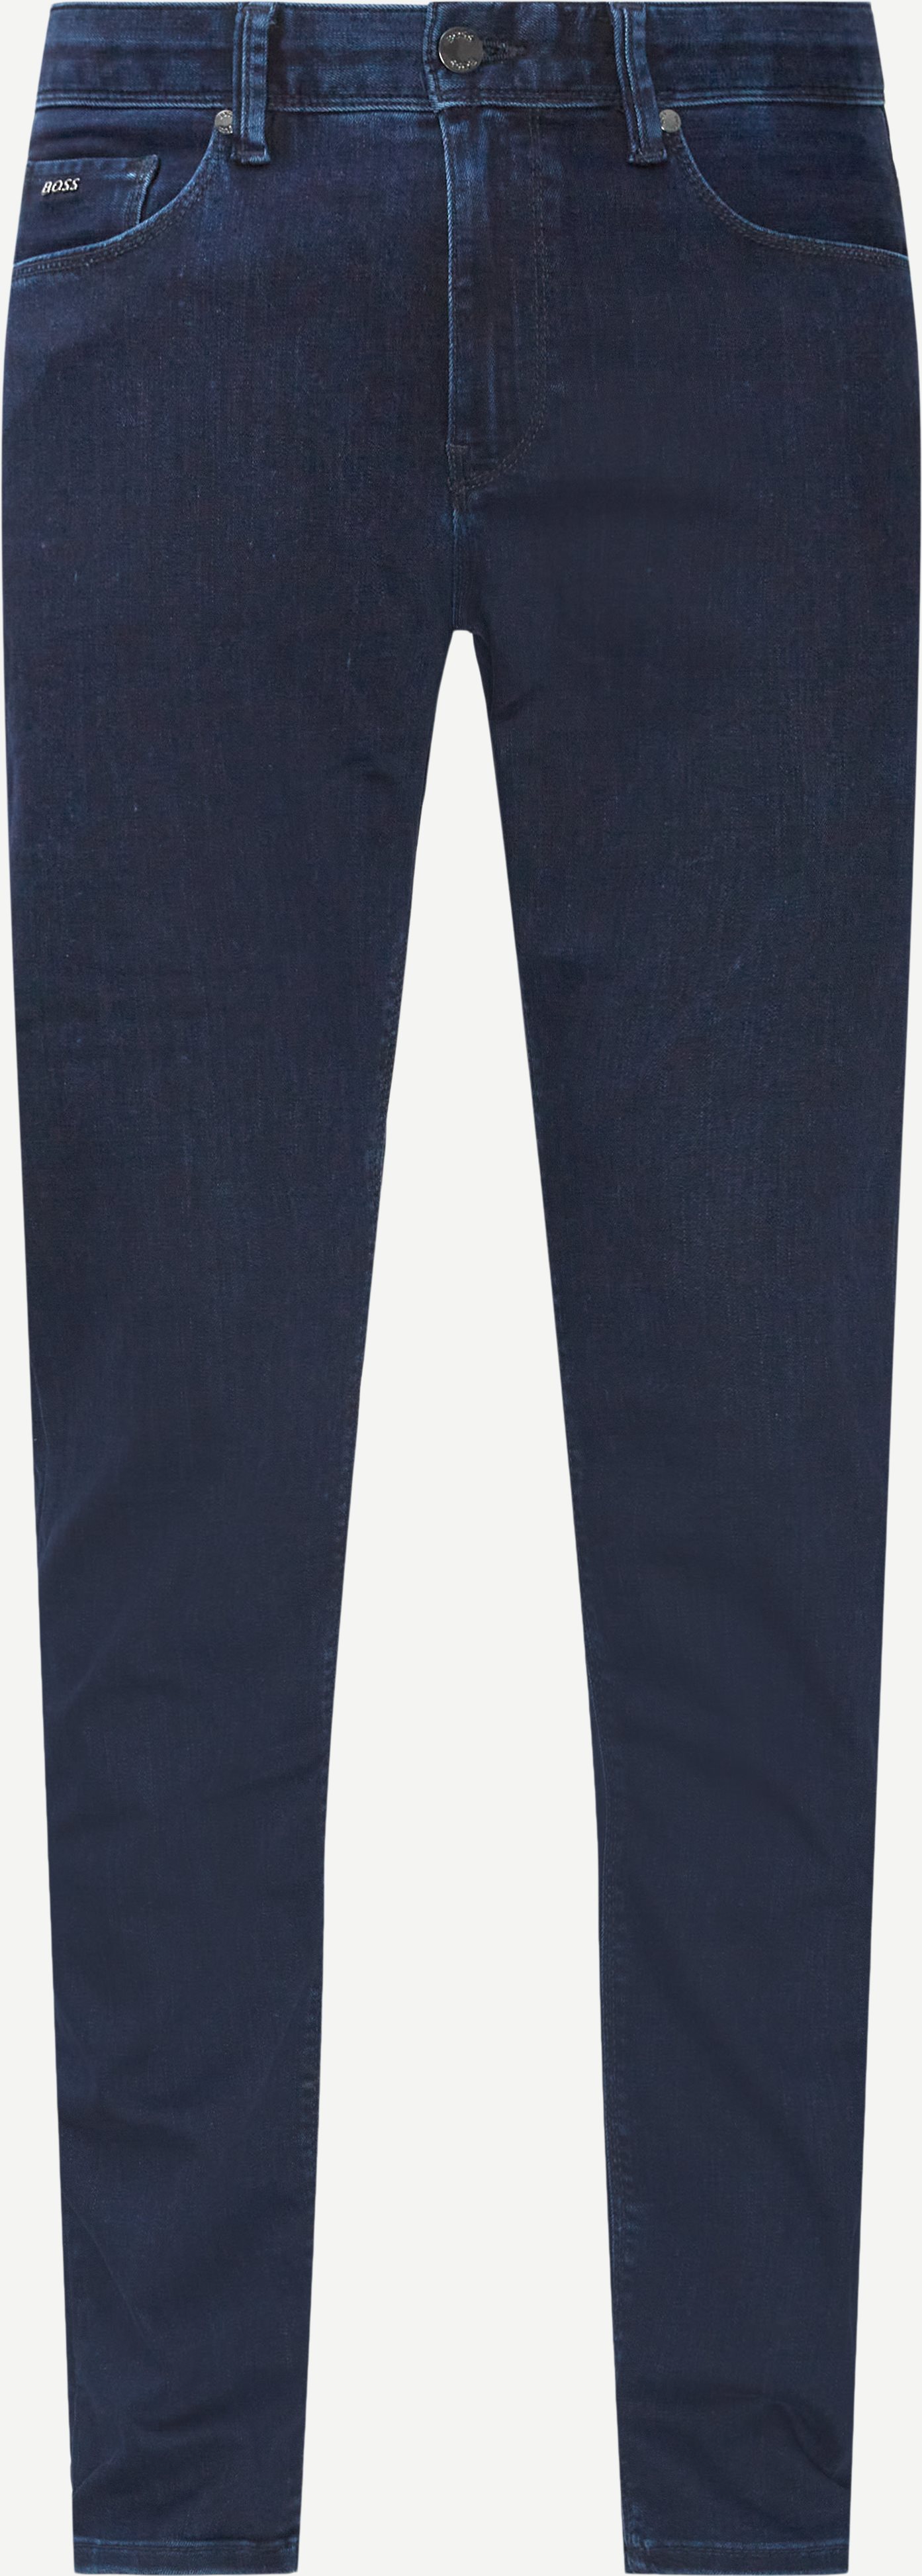 Jeans - Slim fit - Blå